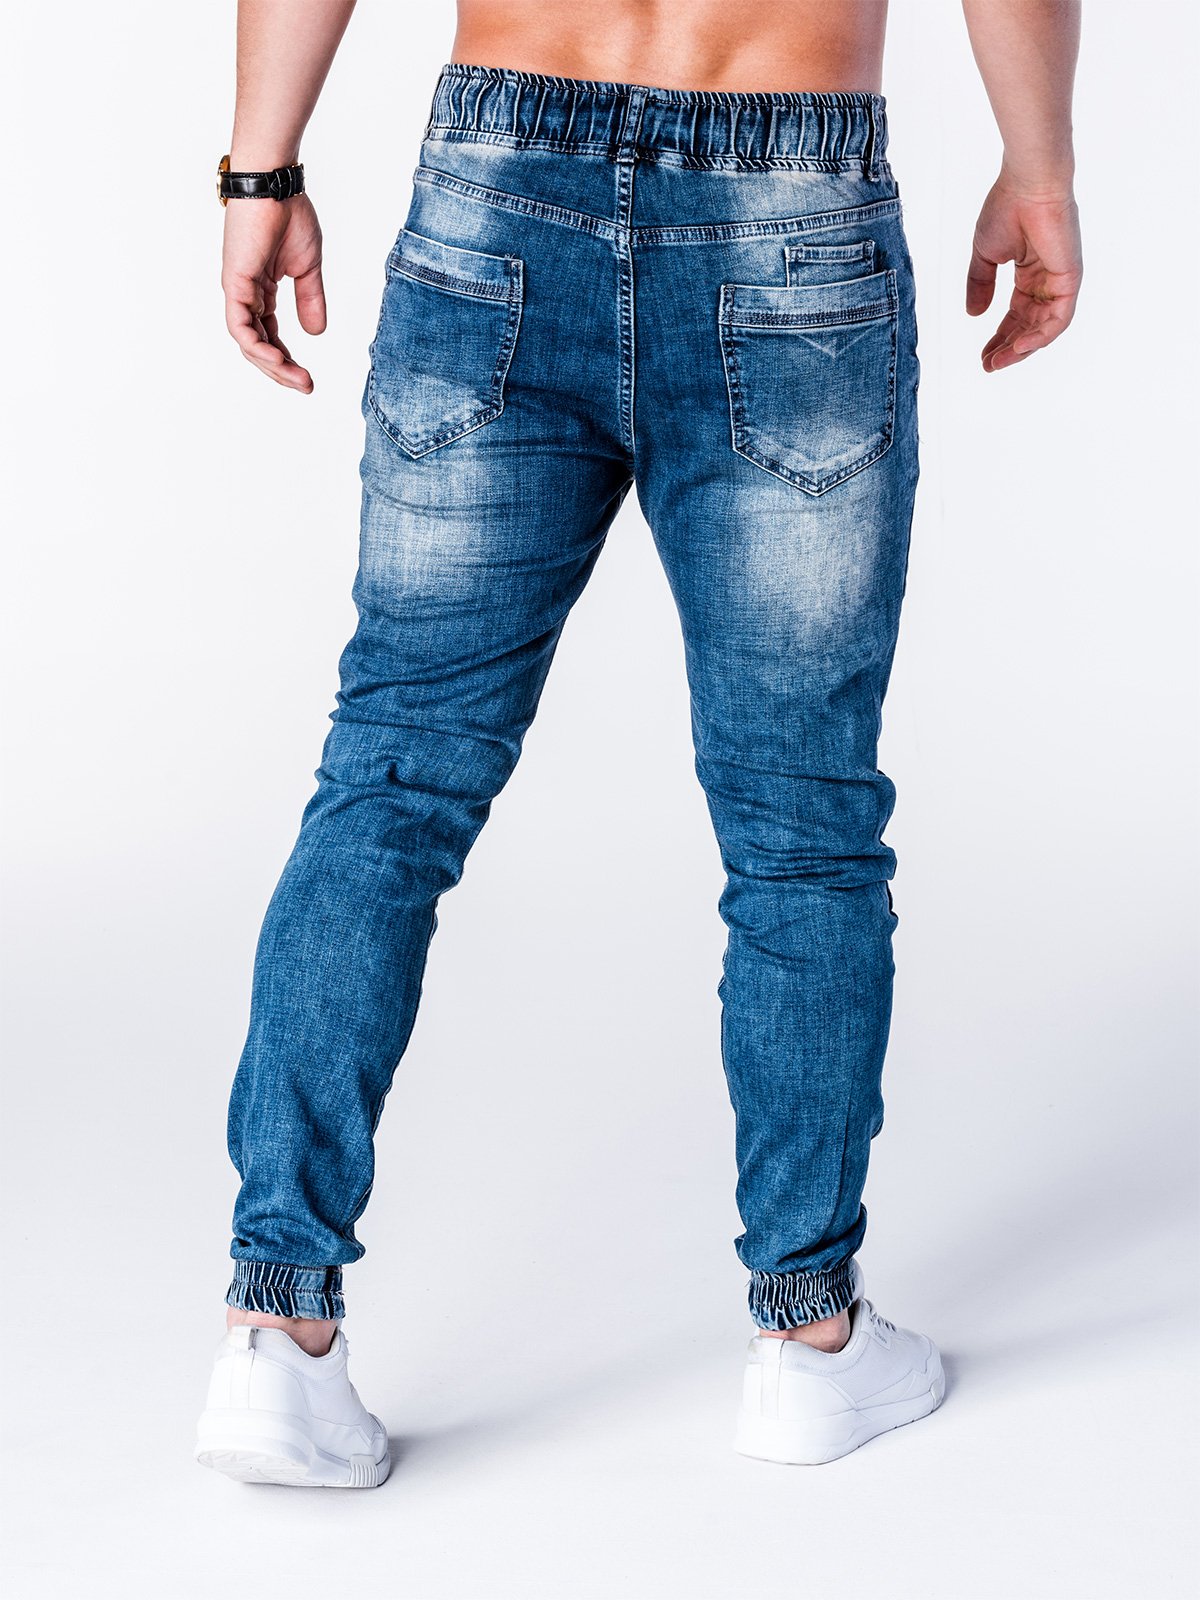 Men's denim jogger pants P663 - blue | MODONE wholesale - Clothing For Men